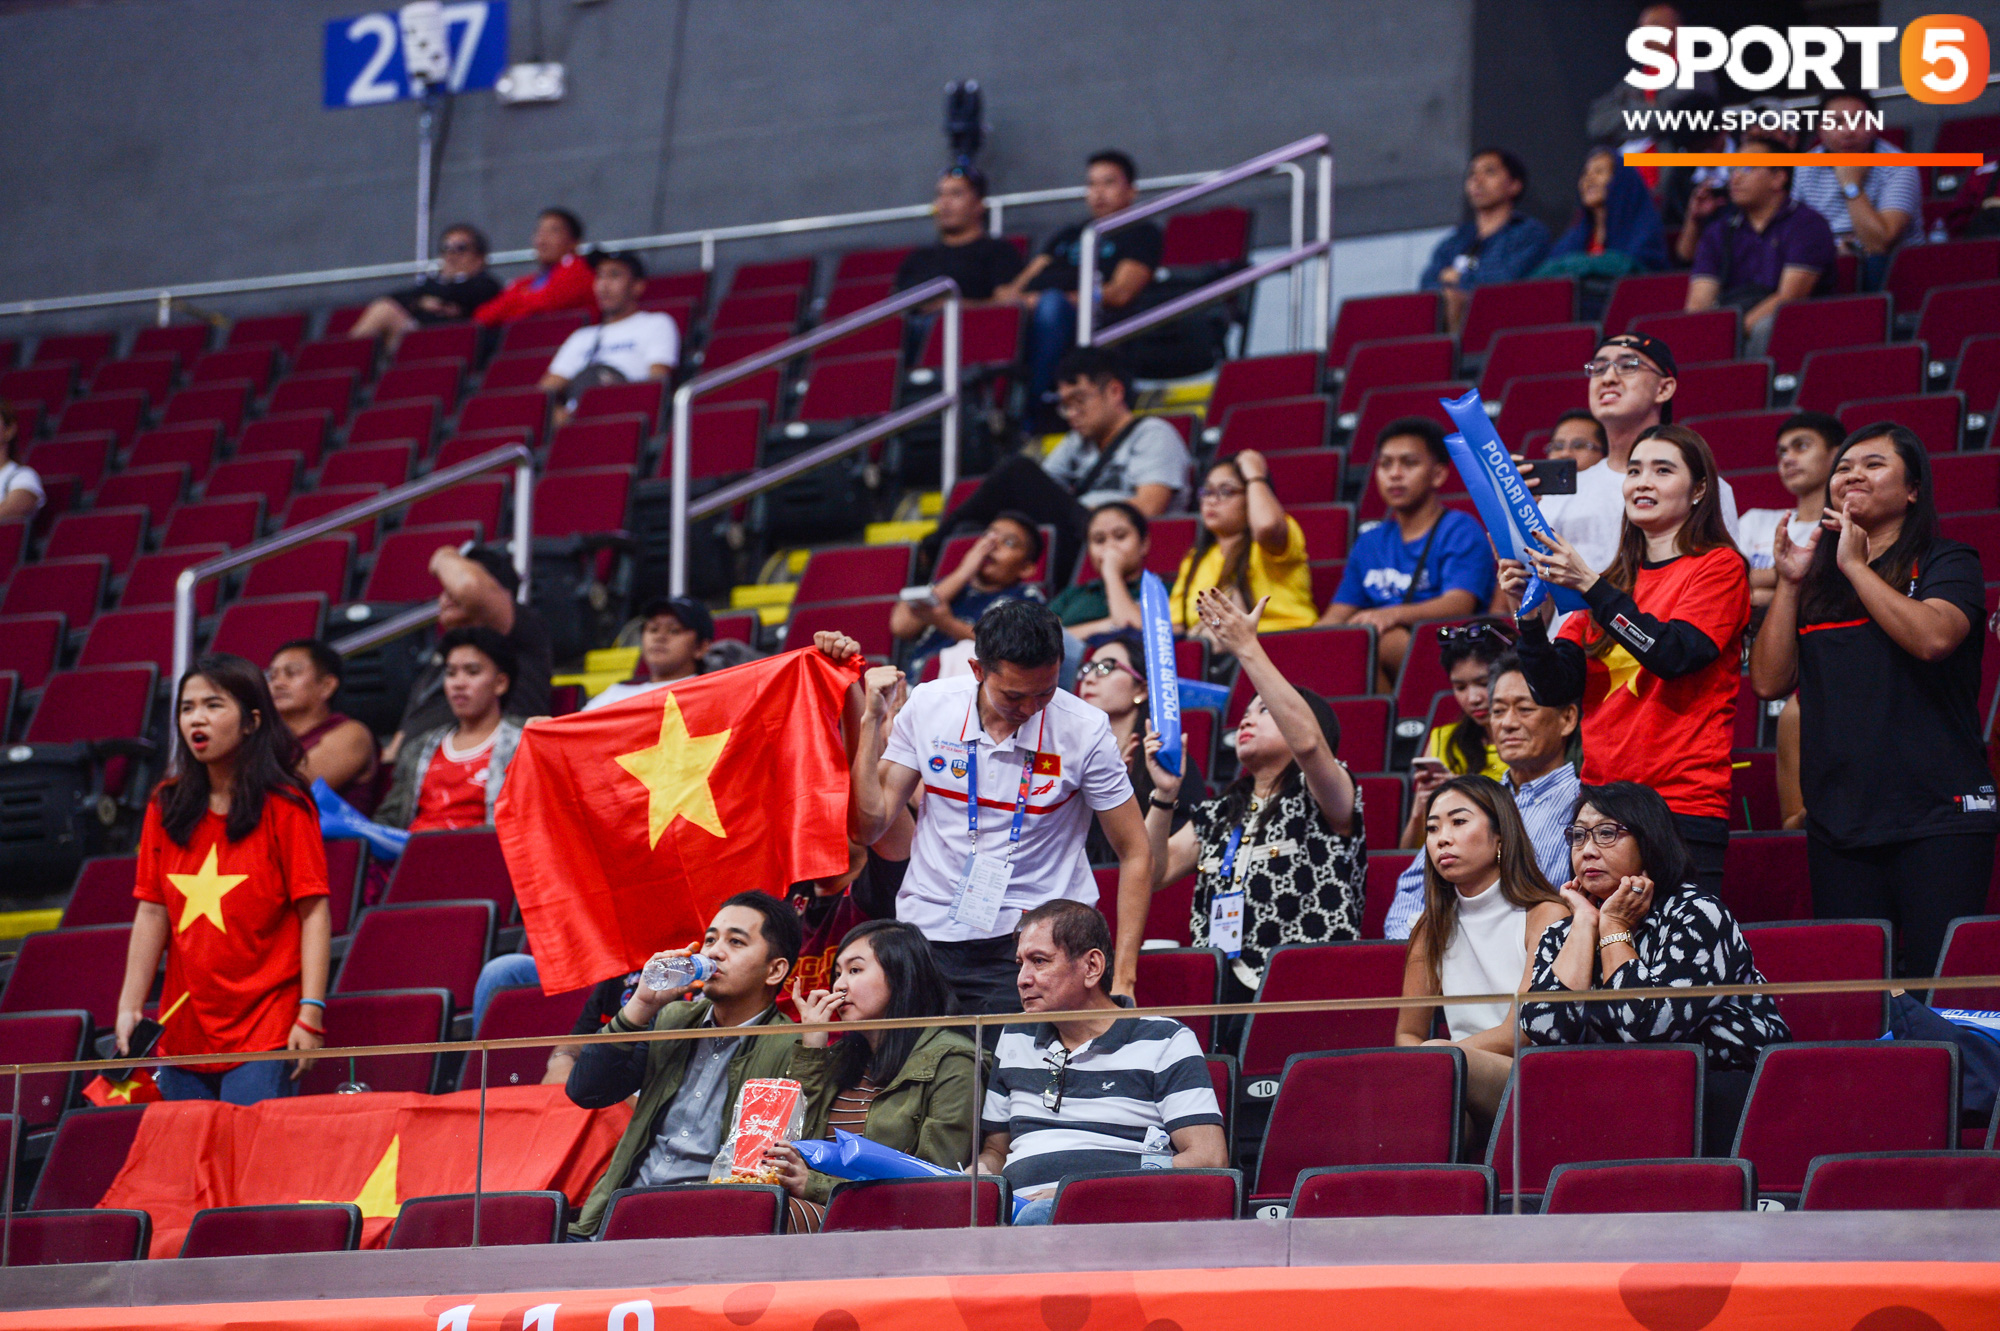 Chùm ảnh: Bật tung cảm xúc khi bóng rổ Việt Nam lần đầu giành tấm huy chương đồng tại SEA Games - Ảnh 4.